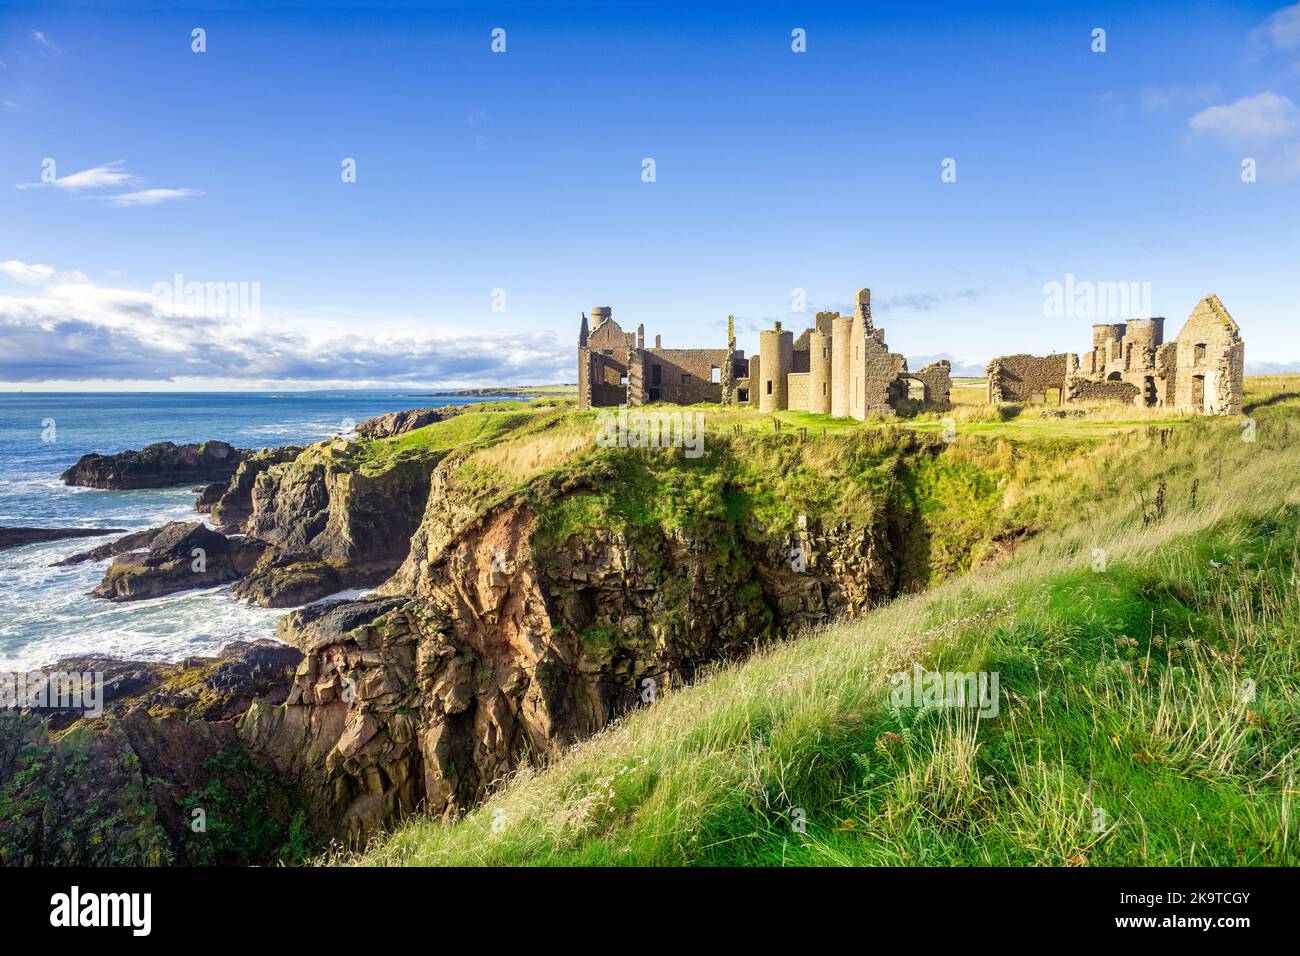 12. September 2022: Aberdeenshire, Schottland - die Ruinen des New Slains Castle, das im 16.. Jahrhundert vom 9.. Earl of Erroll erbaut wurde, zeigen... Stockfoto